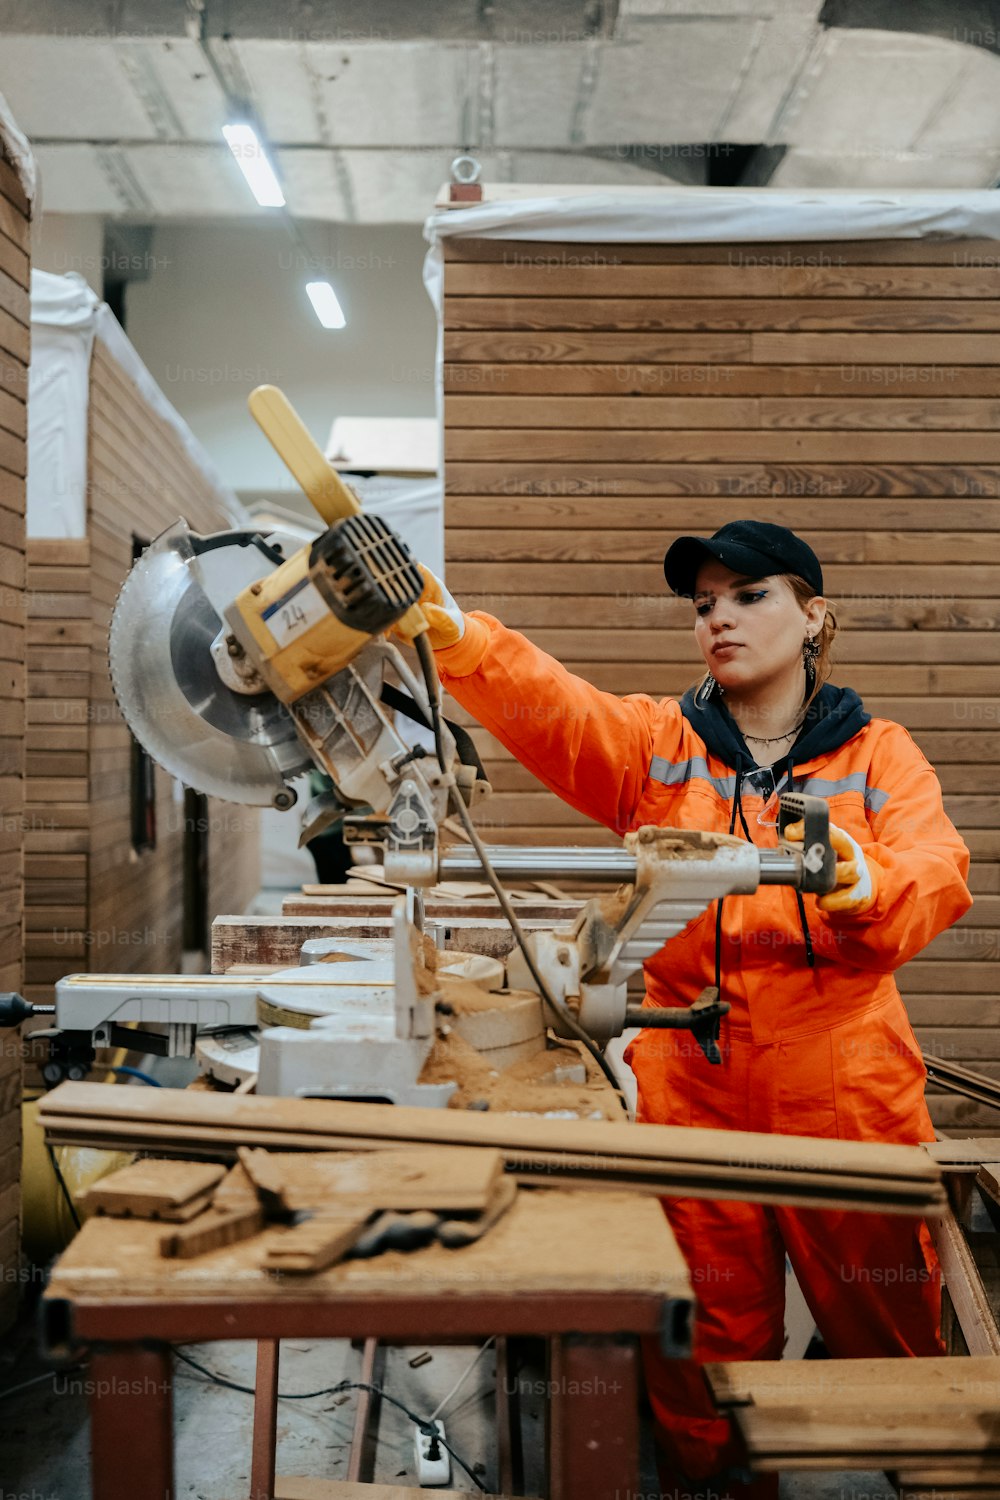 Eine Frau in einem orangefarbenen Overall bei der Arbeit an einer Maschine